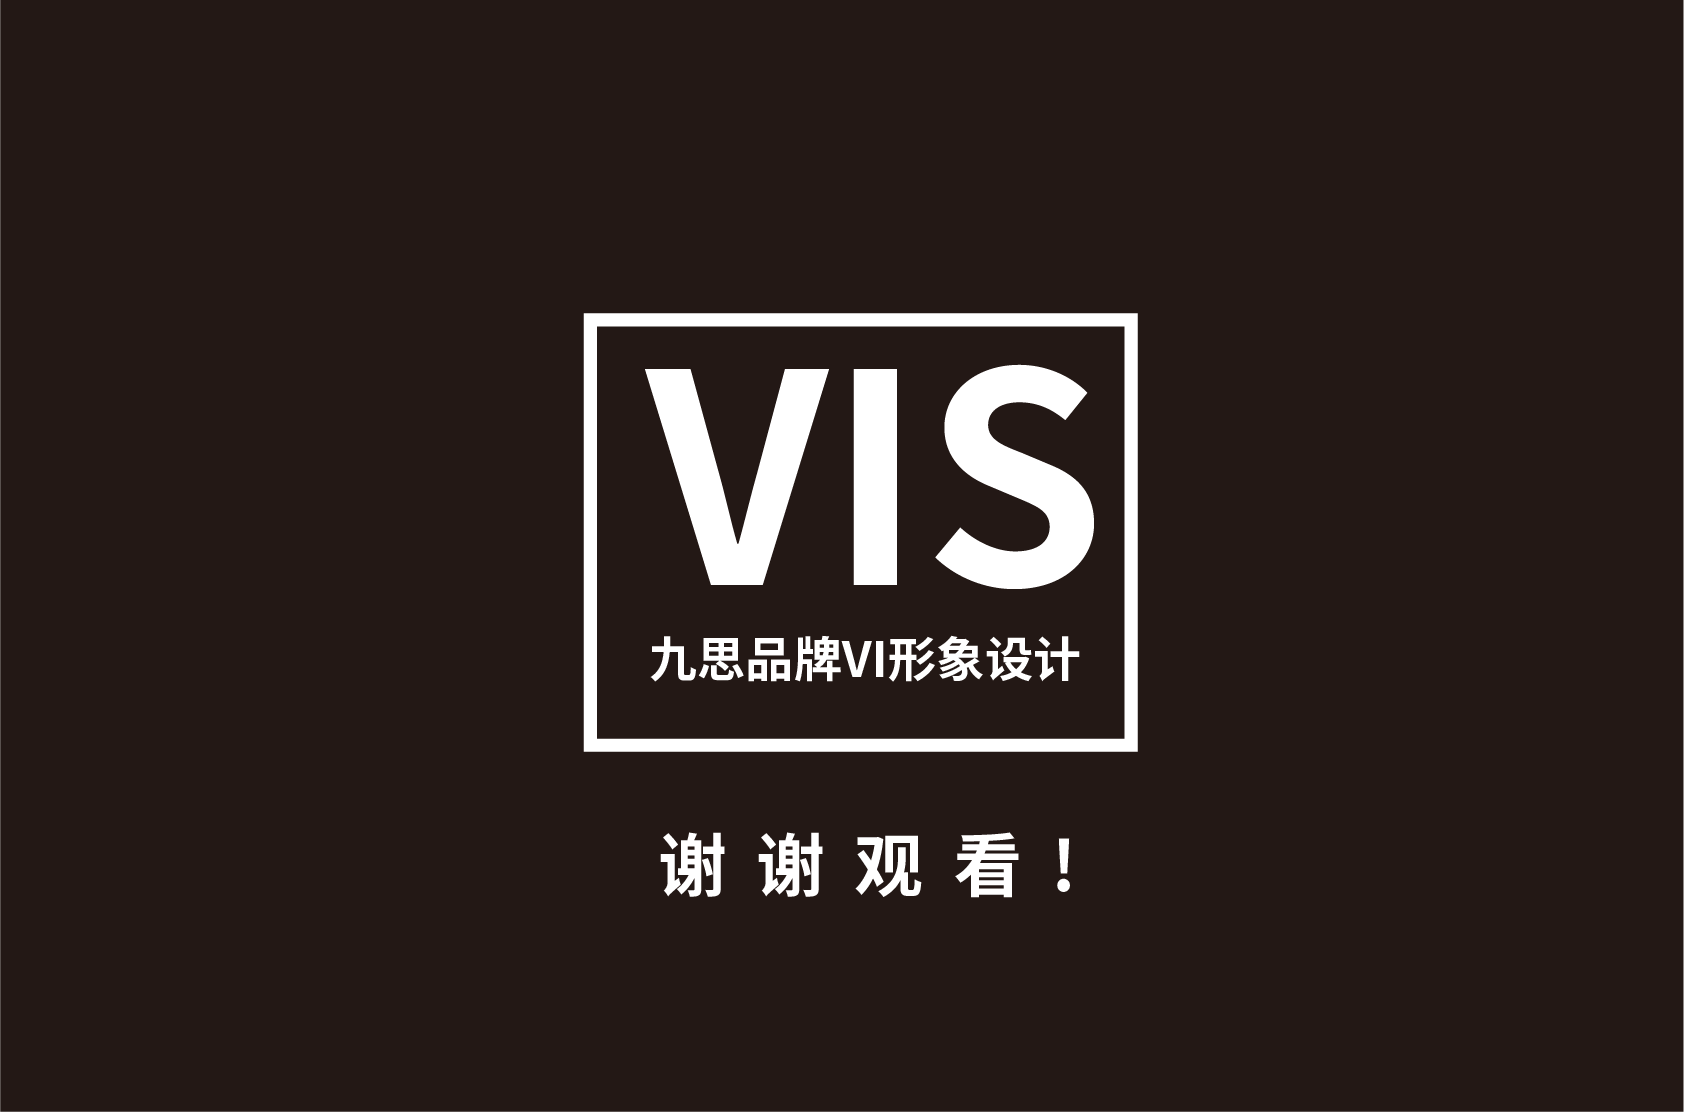 九思酒店形象设计/品牌logo/vi设计升级/商标设计/标志平面设计